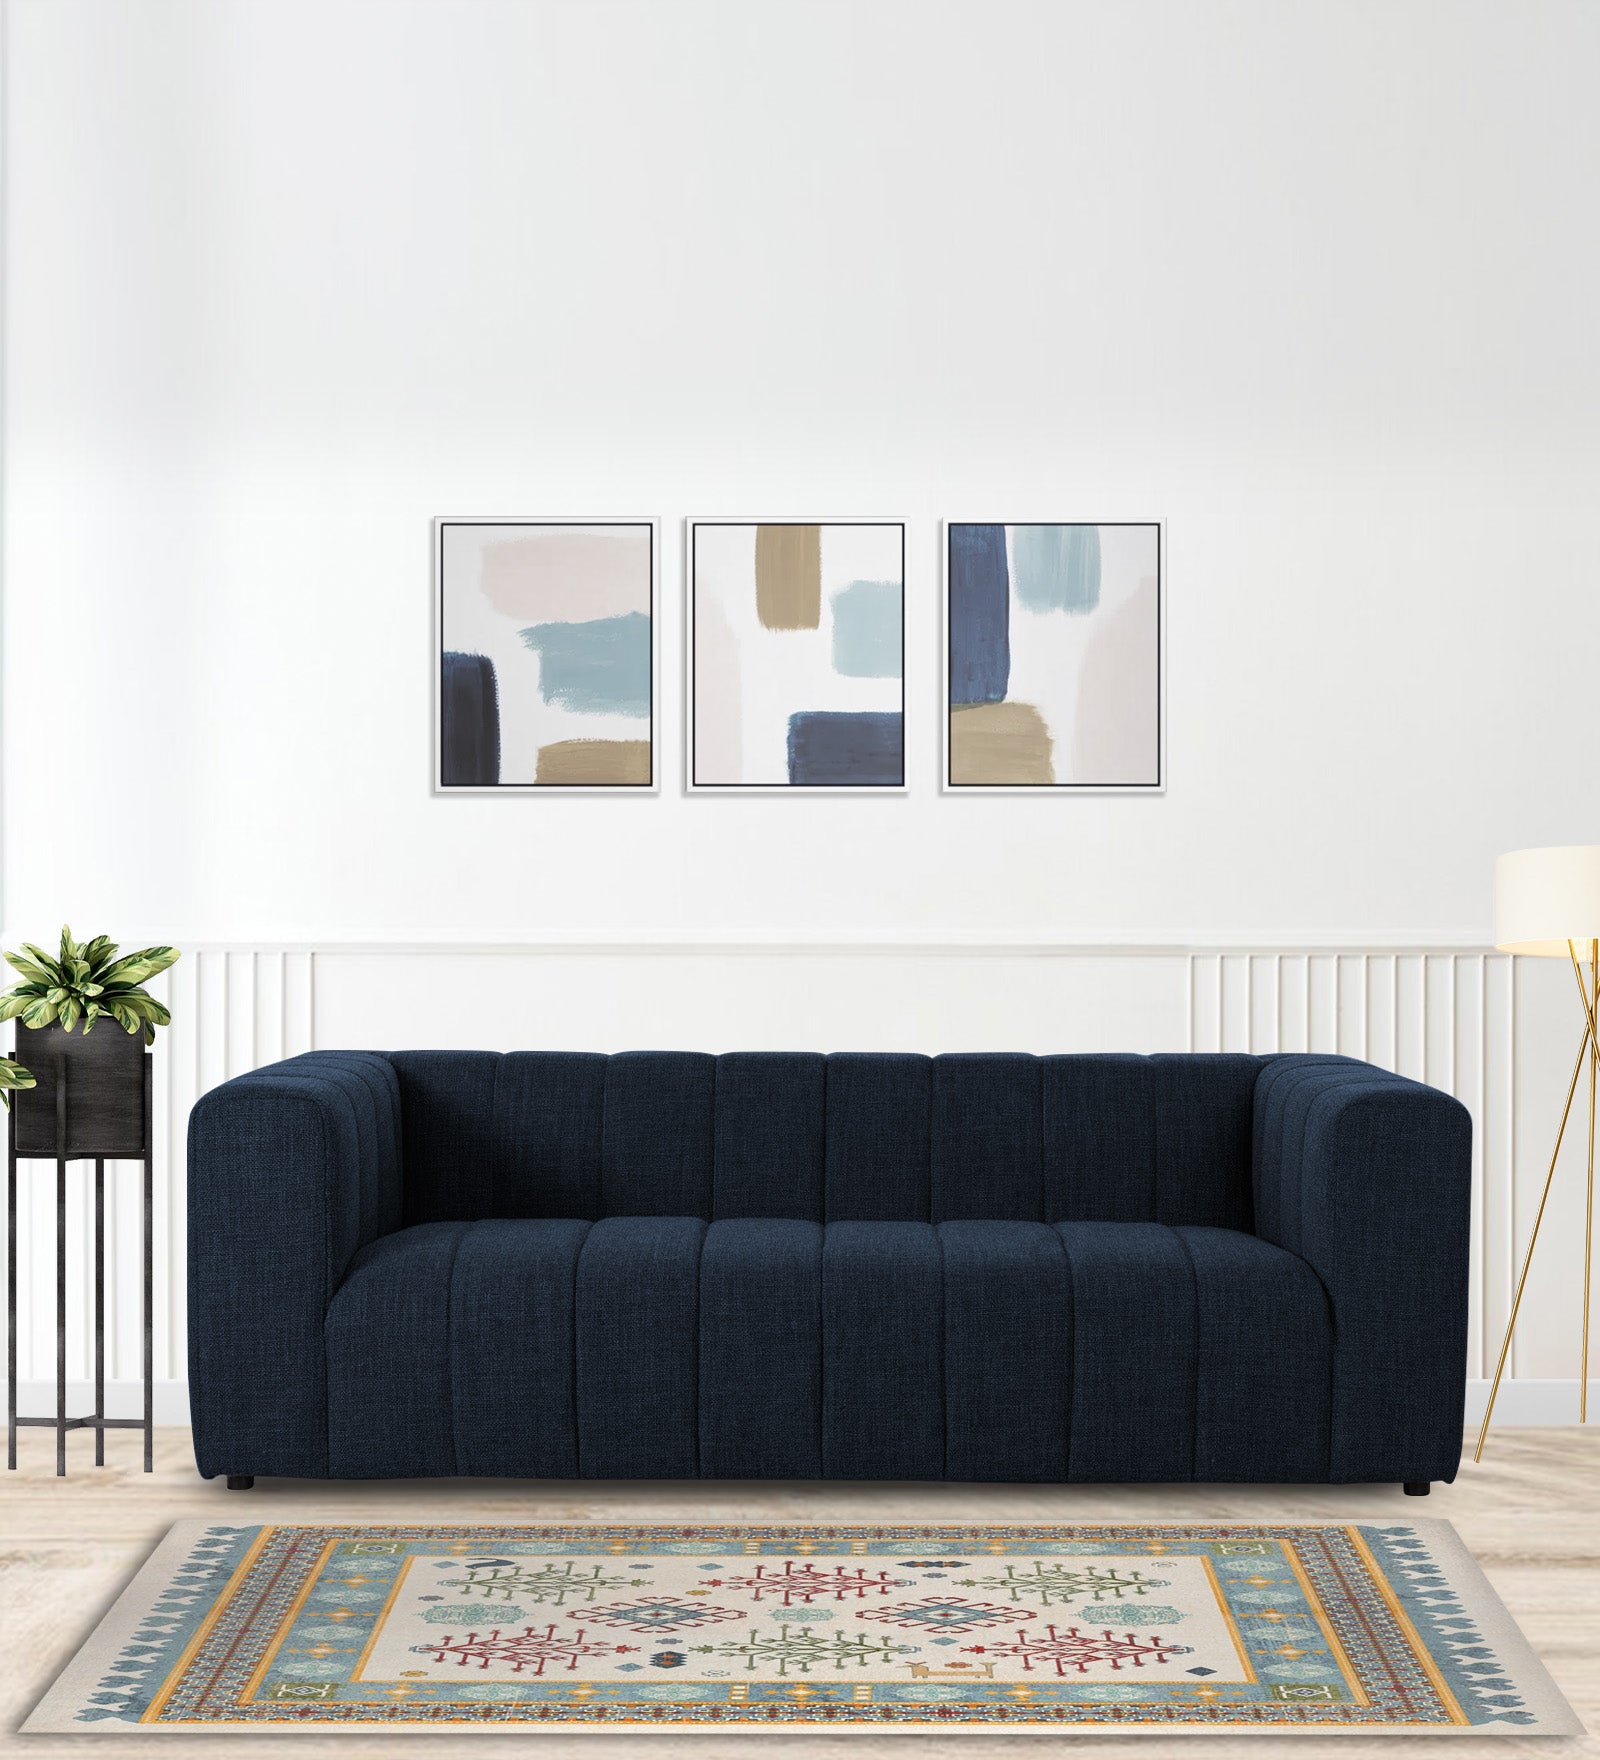 Lara Fabric 3 Seater Sofa in Denim Blue Colour